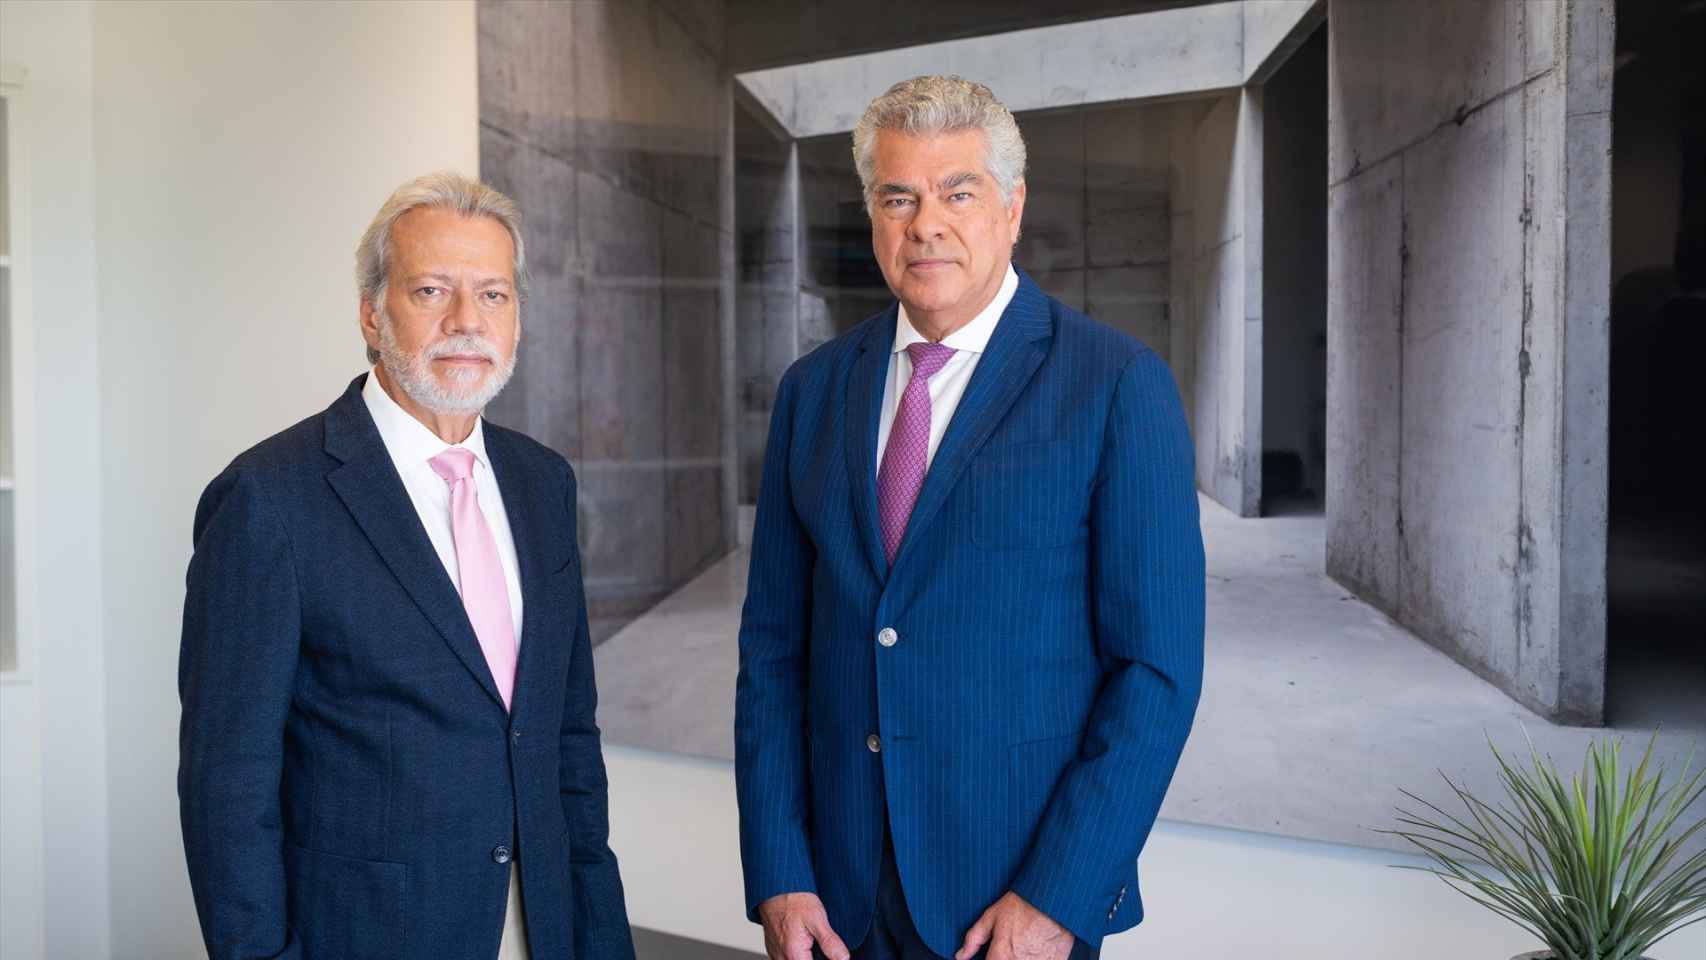 Luis Amodio y Mauricio Amodio, presidente y vicepresidente de OHLA.